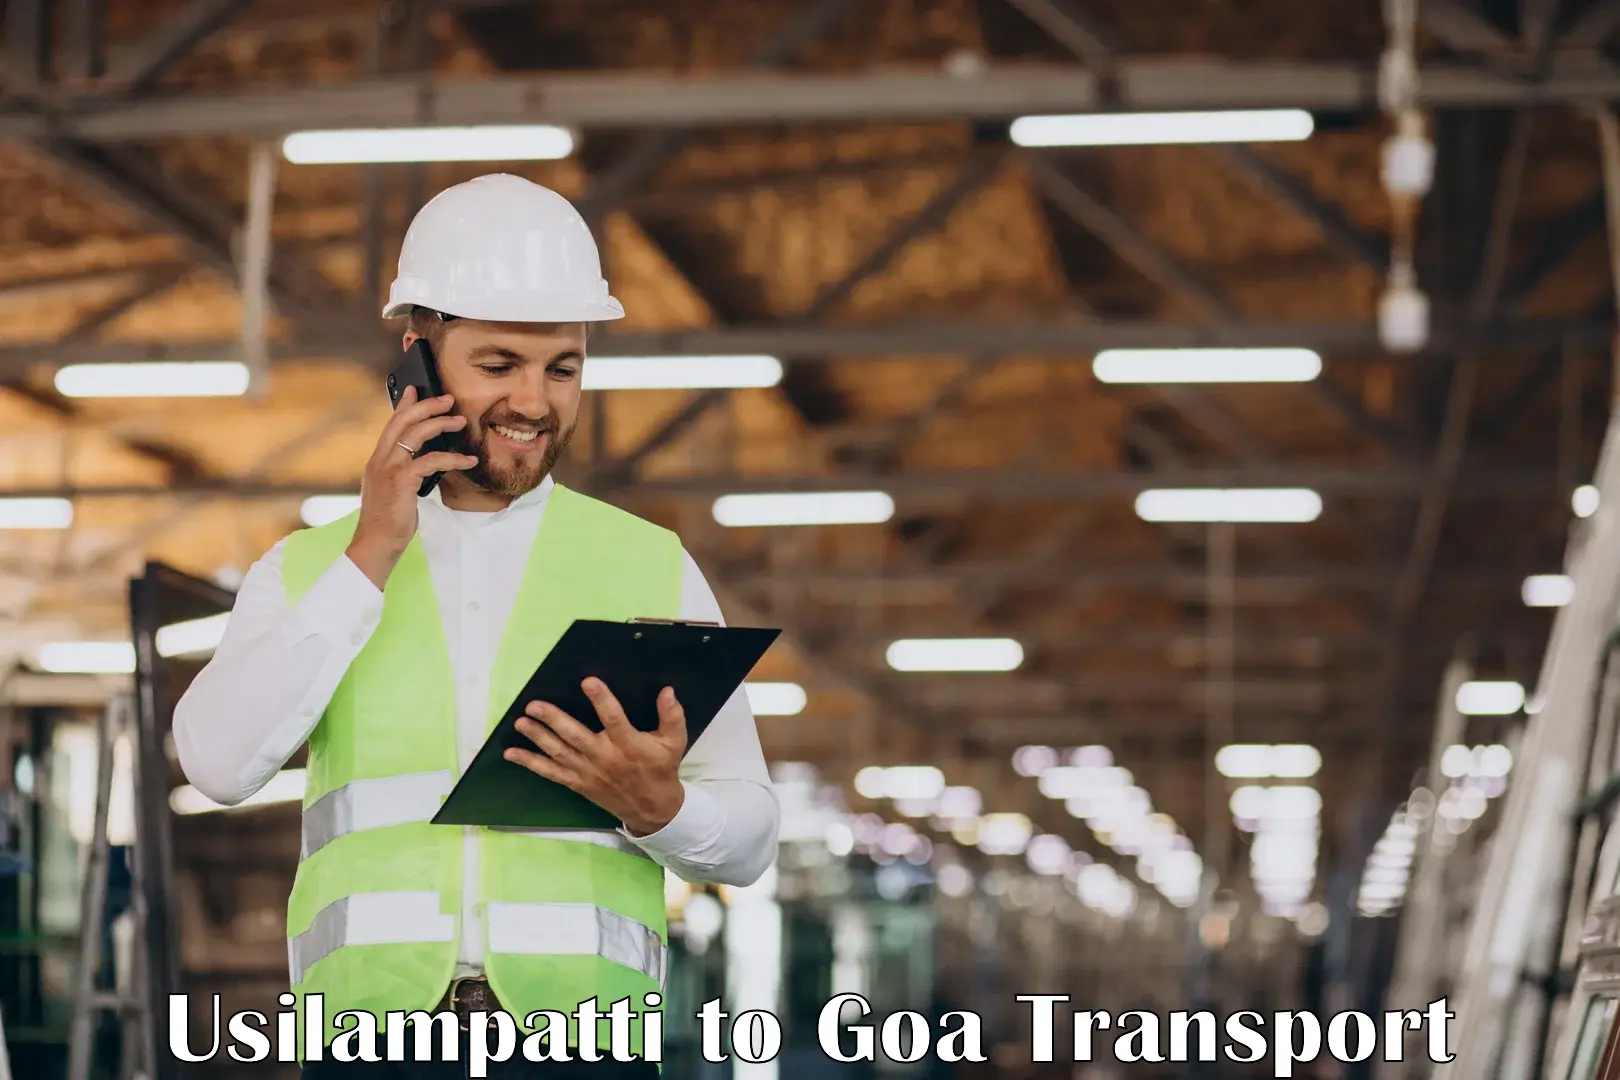 Furniture transport service Usilampatti to Goa University